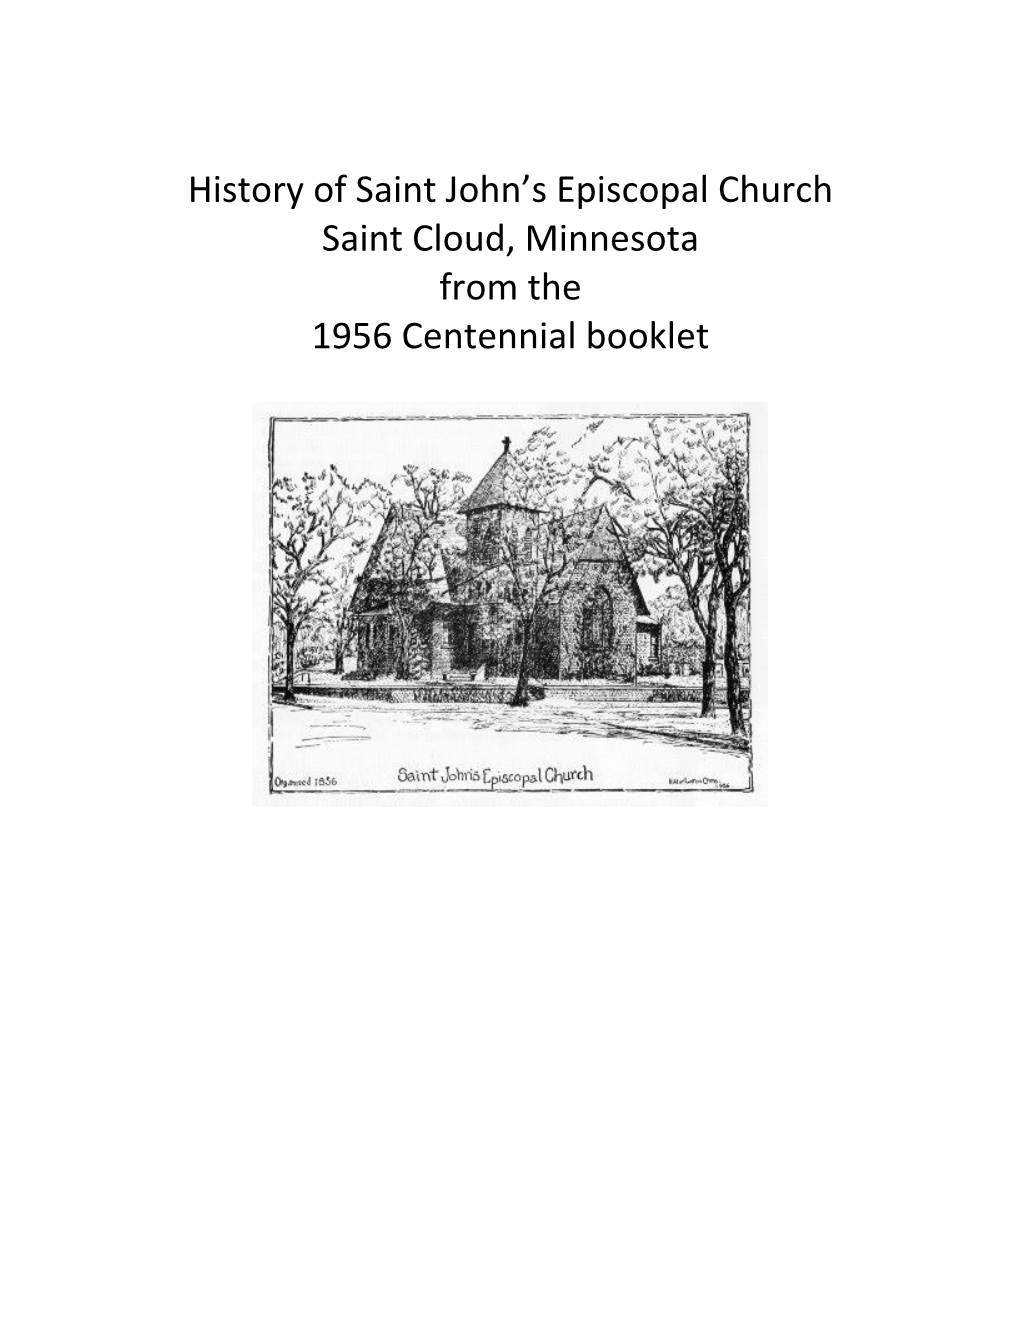 History of Saint John's Episcopal Church Saint Cloud, Minnesota from the 1956 Centennial Booklet